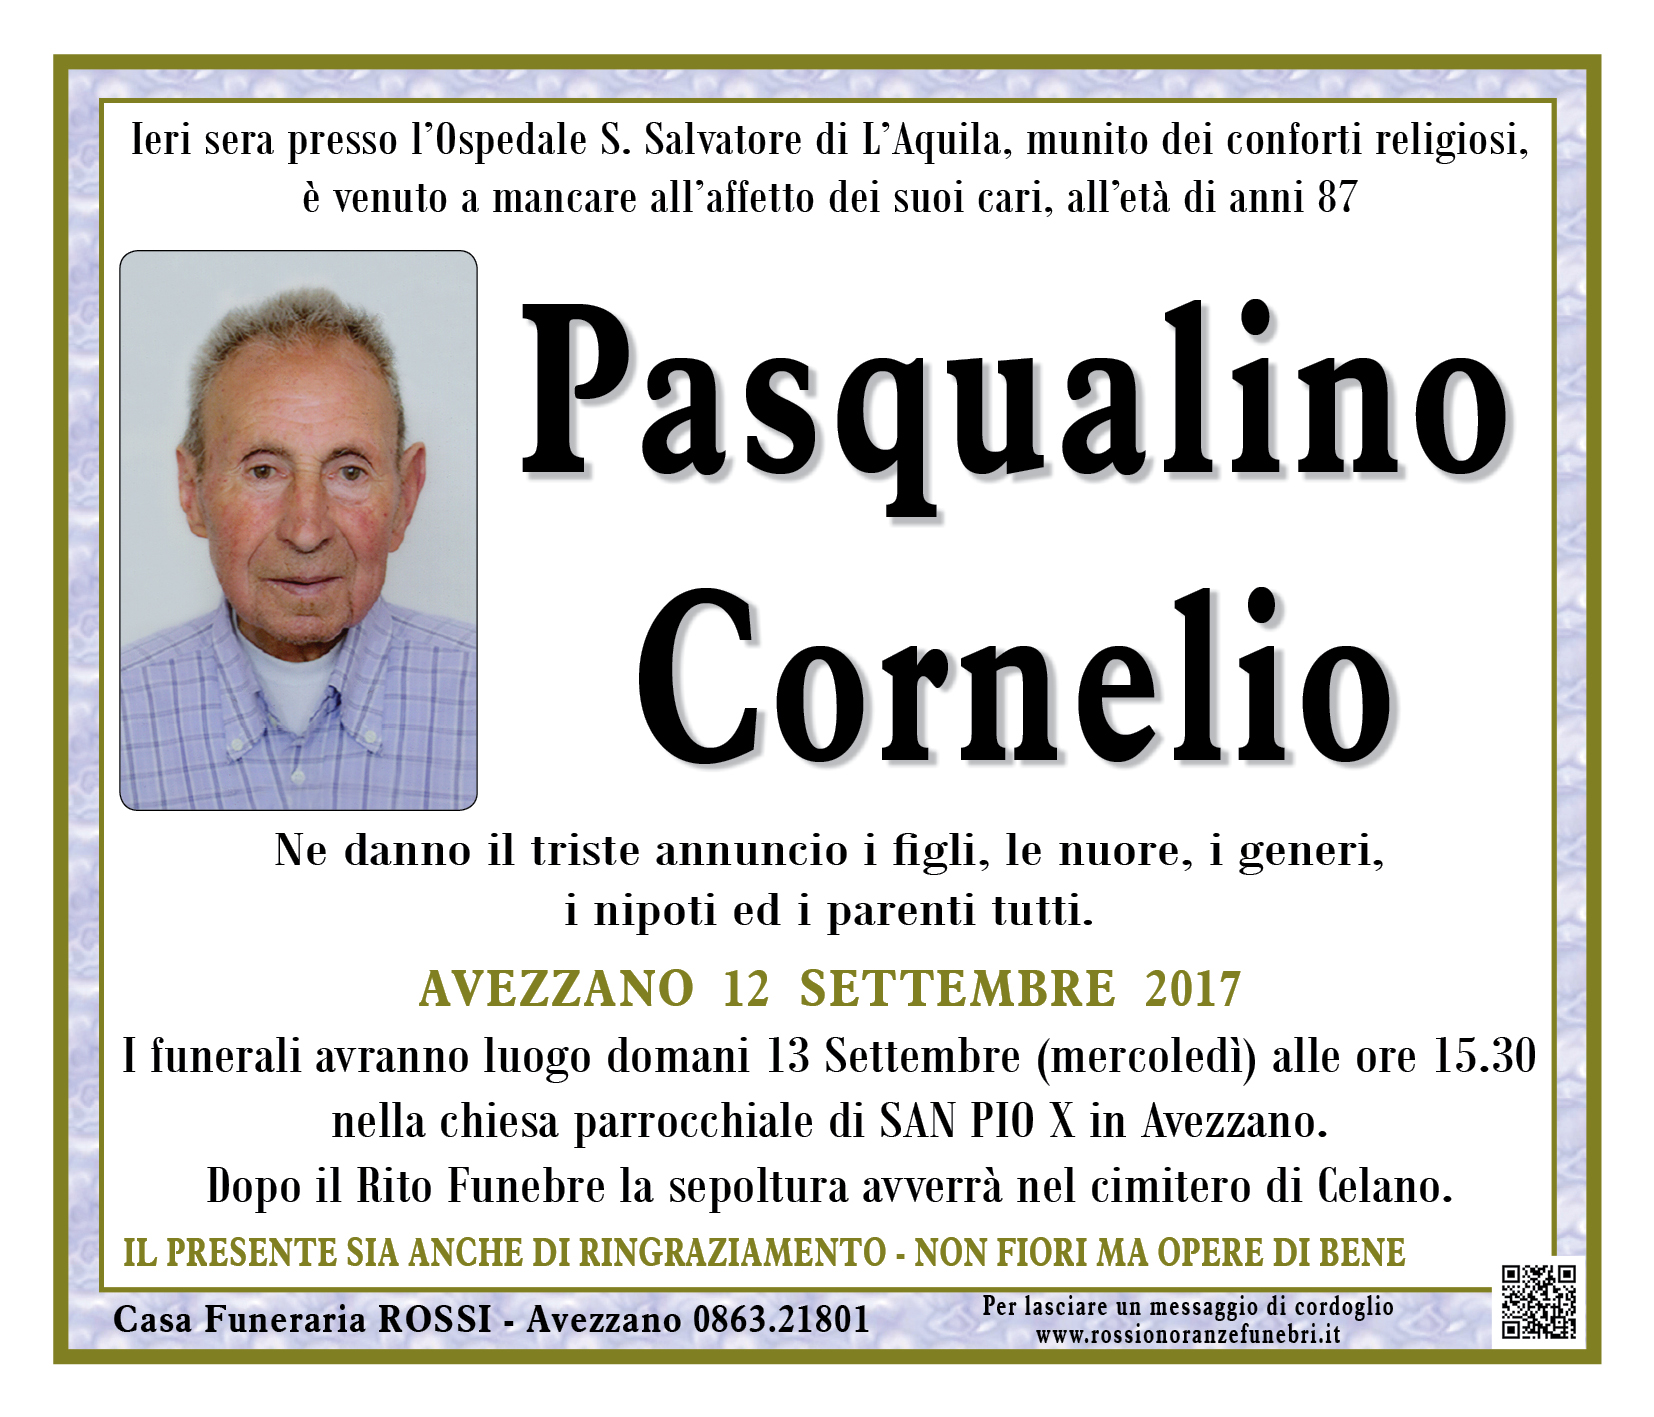 Pasqualino Cornelio